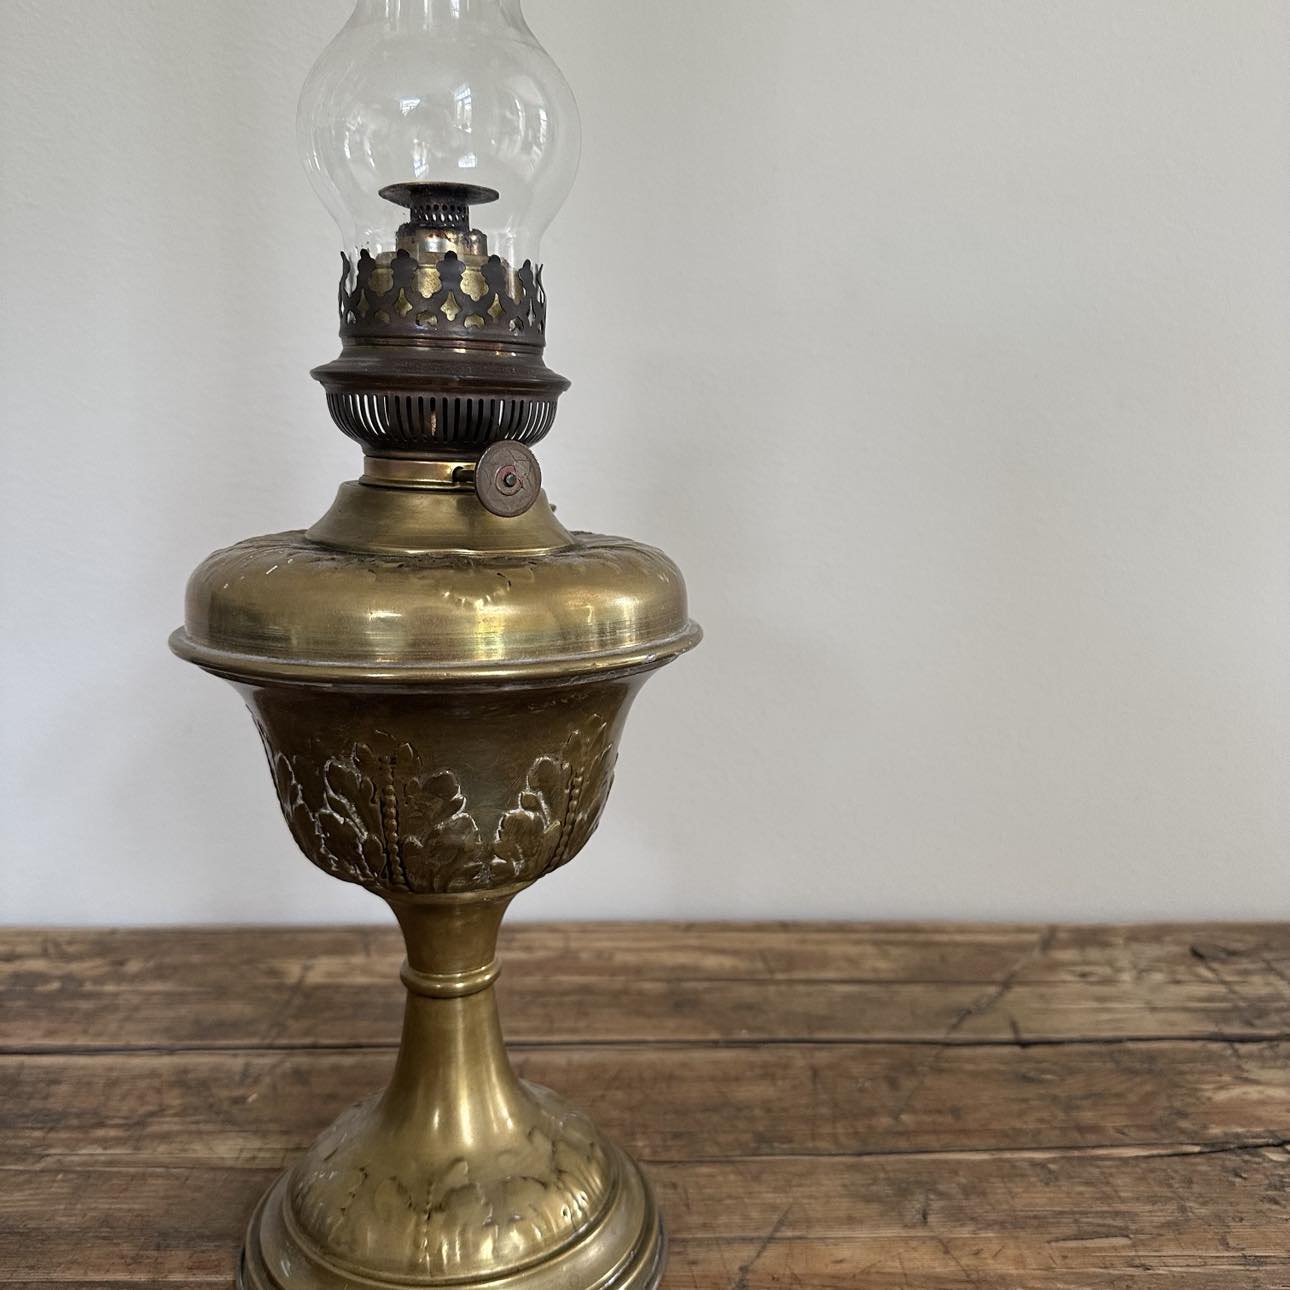 Oil lamp in golden metal